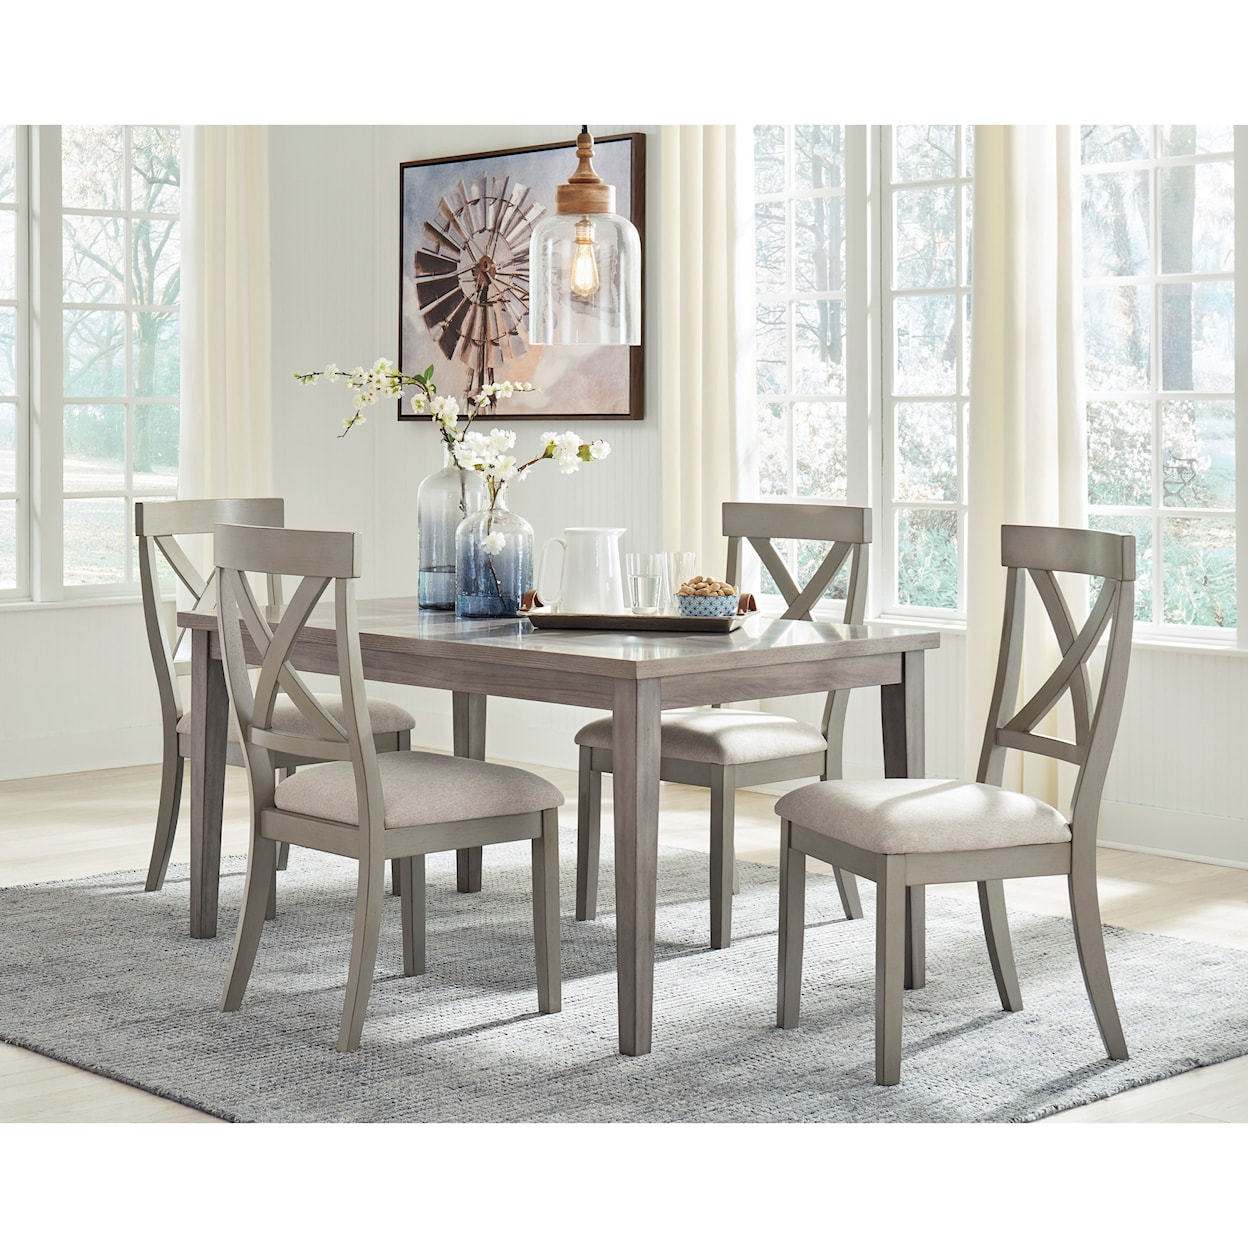 Ashley Signature Design Parellen 5-Piece Table and Chair Set